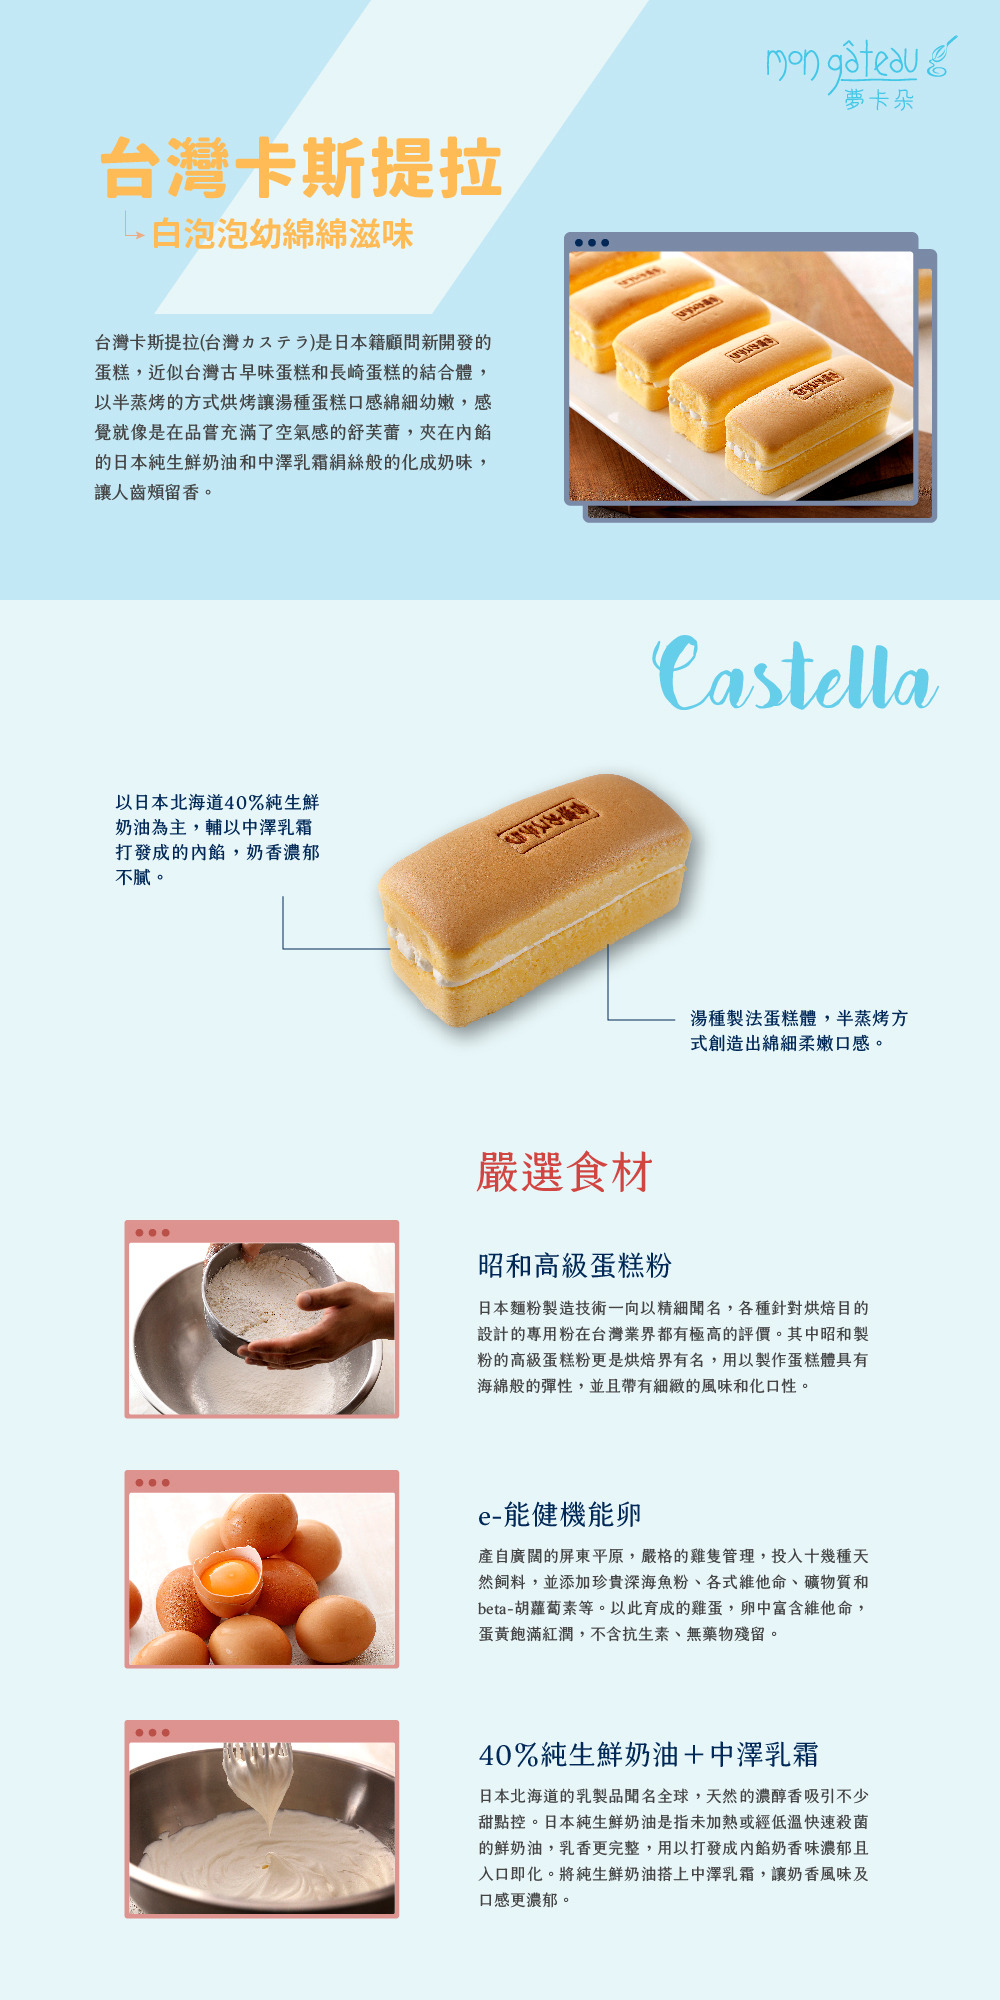 台灣卡斯提拉(台灣カステラ)產品說明